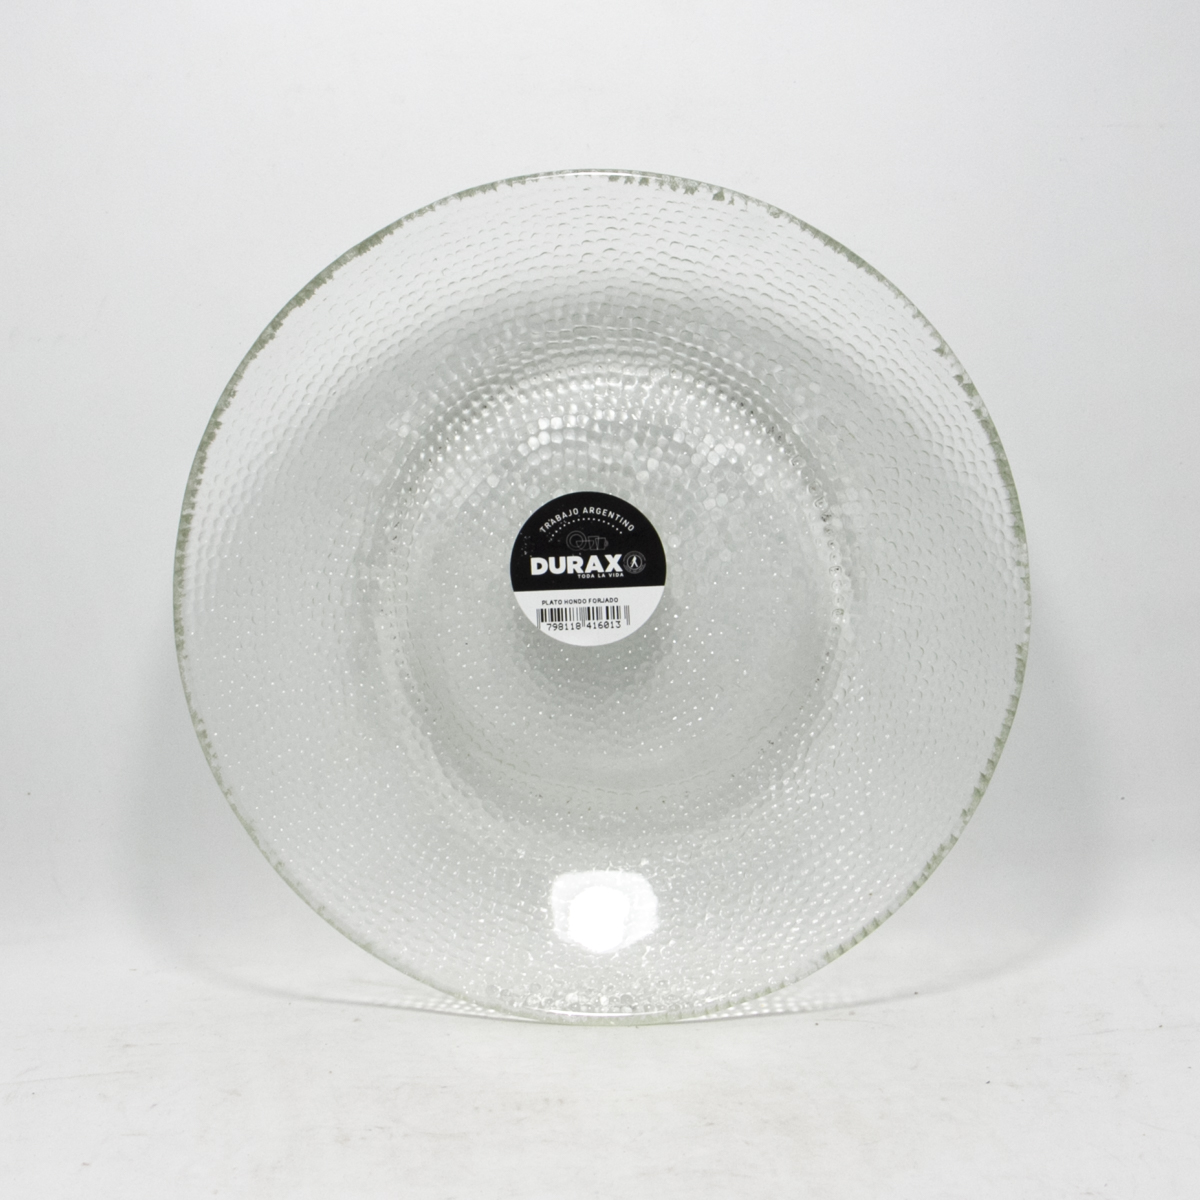 Plato forjado hondo Durax - vidrio - 21,3cm.